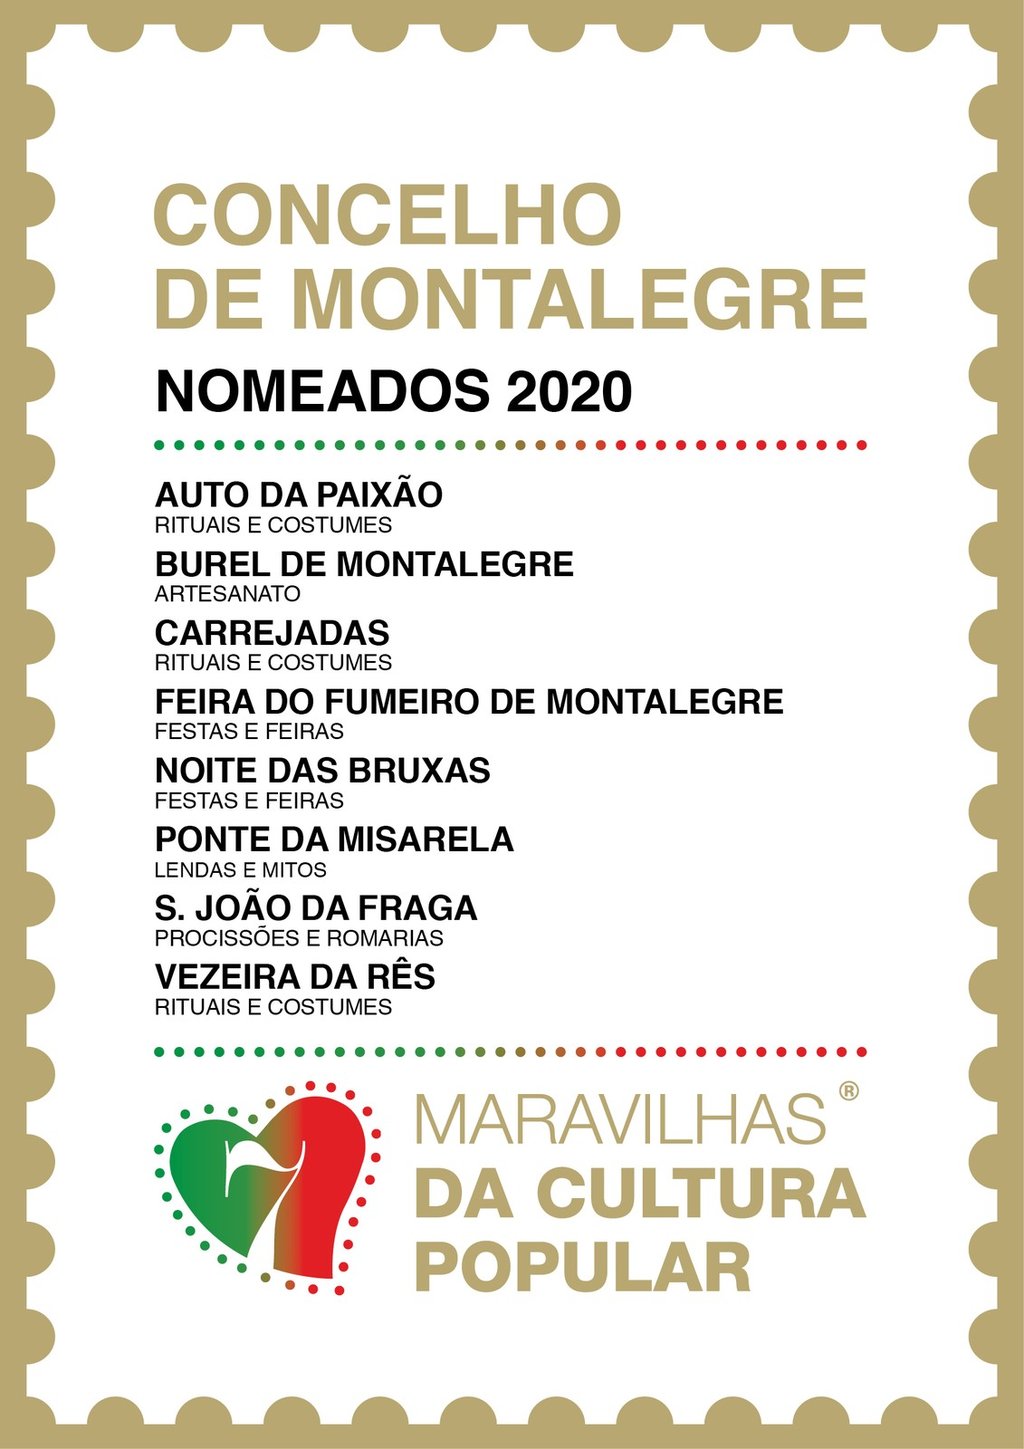 Concelho de montalegre  7 maravilhas da cultura popular 2020    nomeados   oficial 1 1024 2500